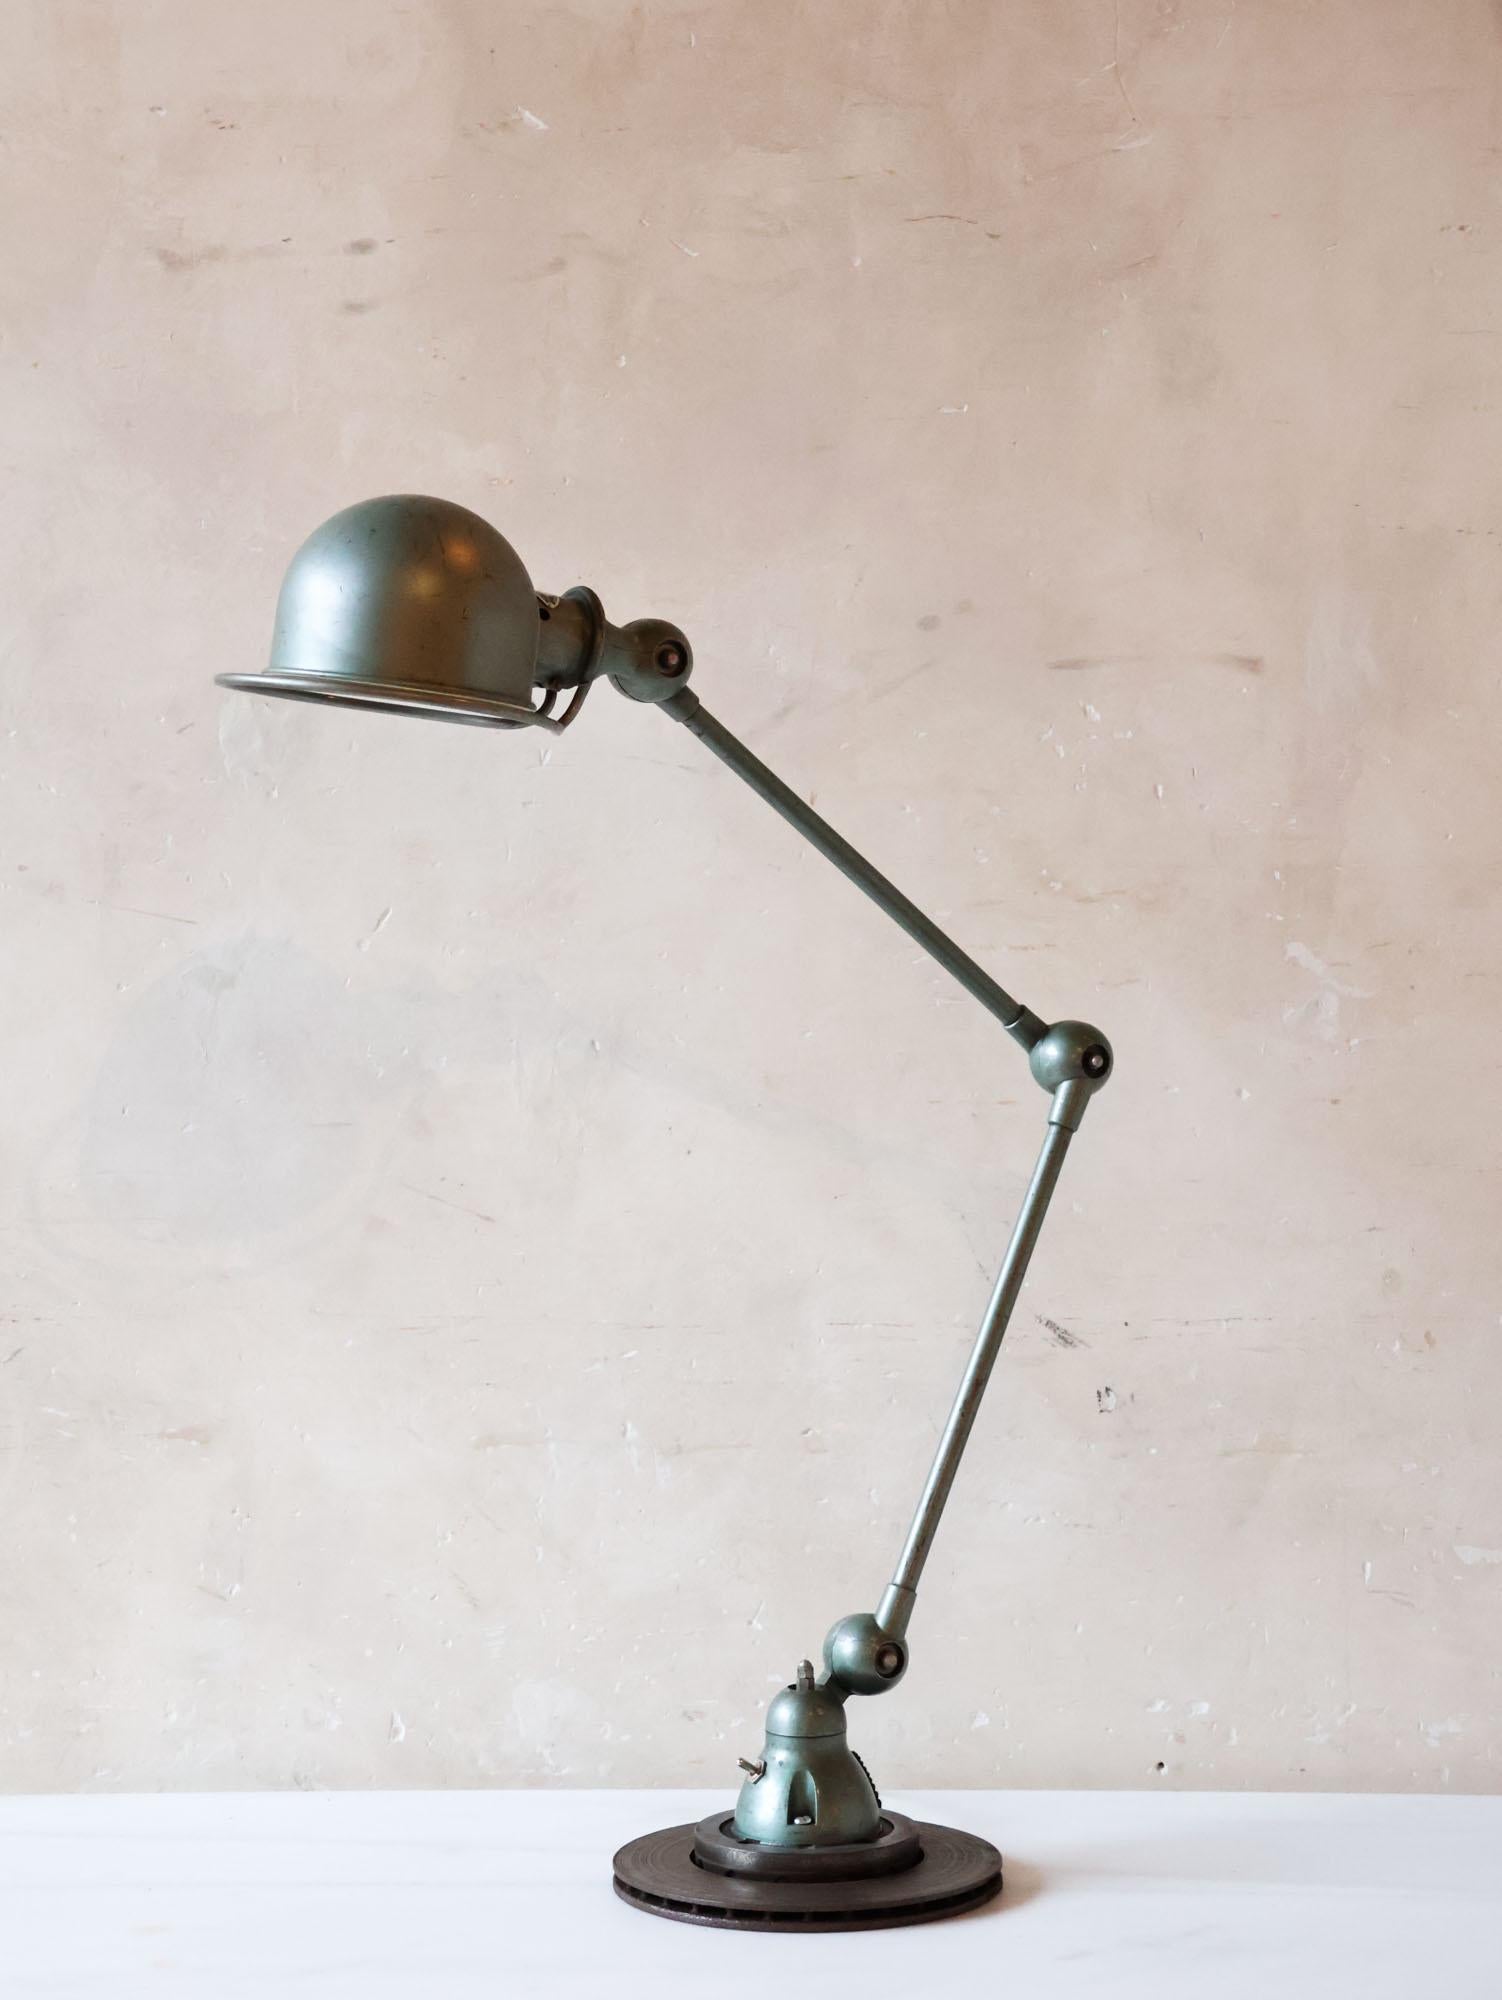 Industrielle französische Vintage-Tischlampe der renommierten Marke Jielde, komplett mit Herstellerstempel. Jielde wurde 1950 von Jean Louis Domecq gegründet und ist bekannt für seine fein gearbeiteten Industrielampen. Handgefertigt in der Nähe von